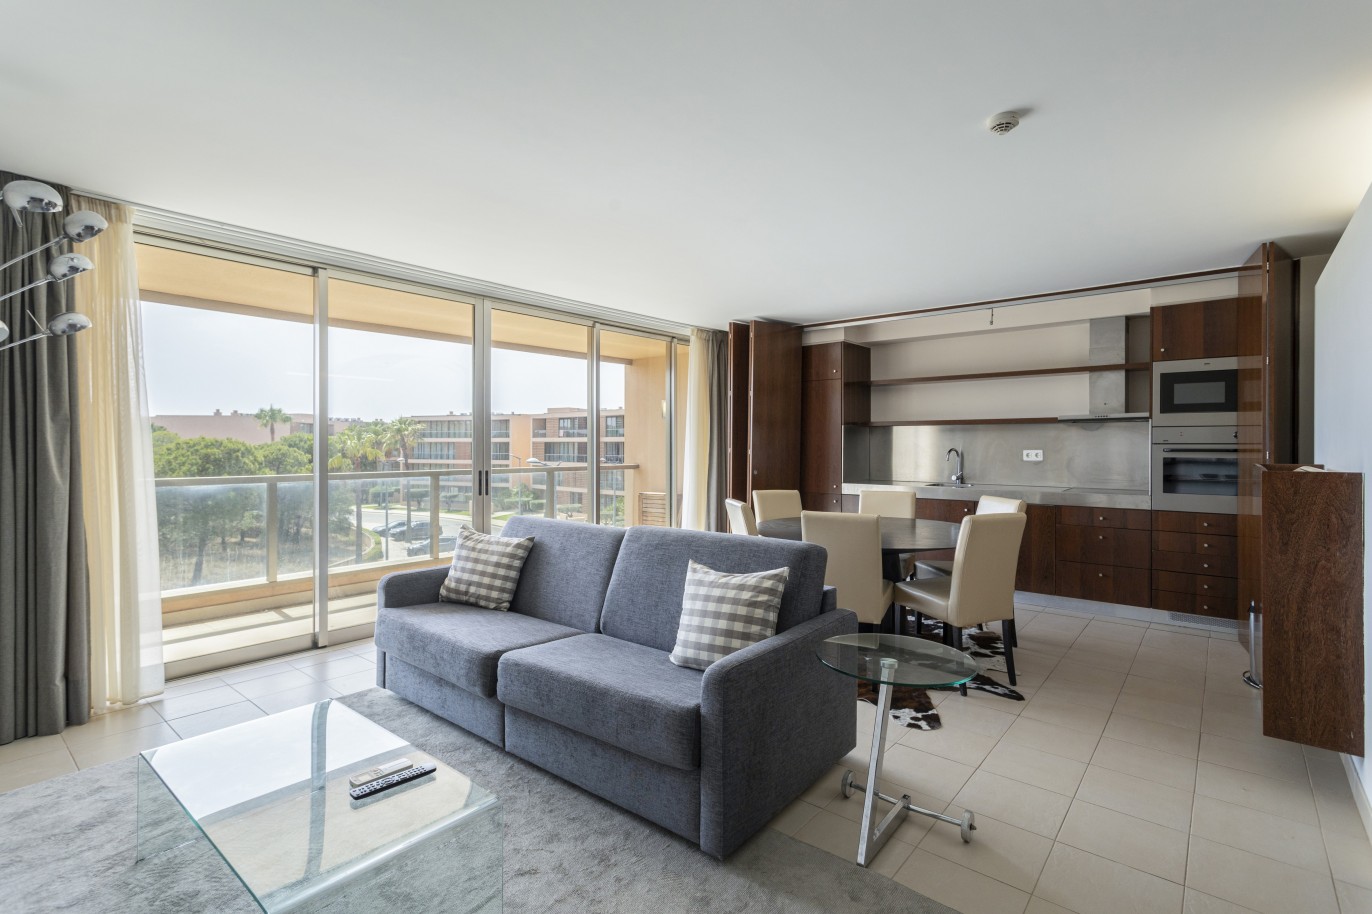 1 bedroom apartment in luxury condominium, for sale in Salgados, Algarve_228185